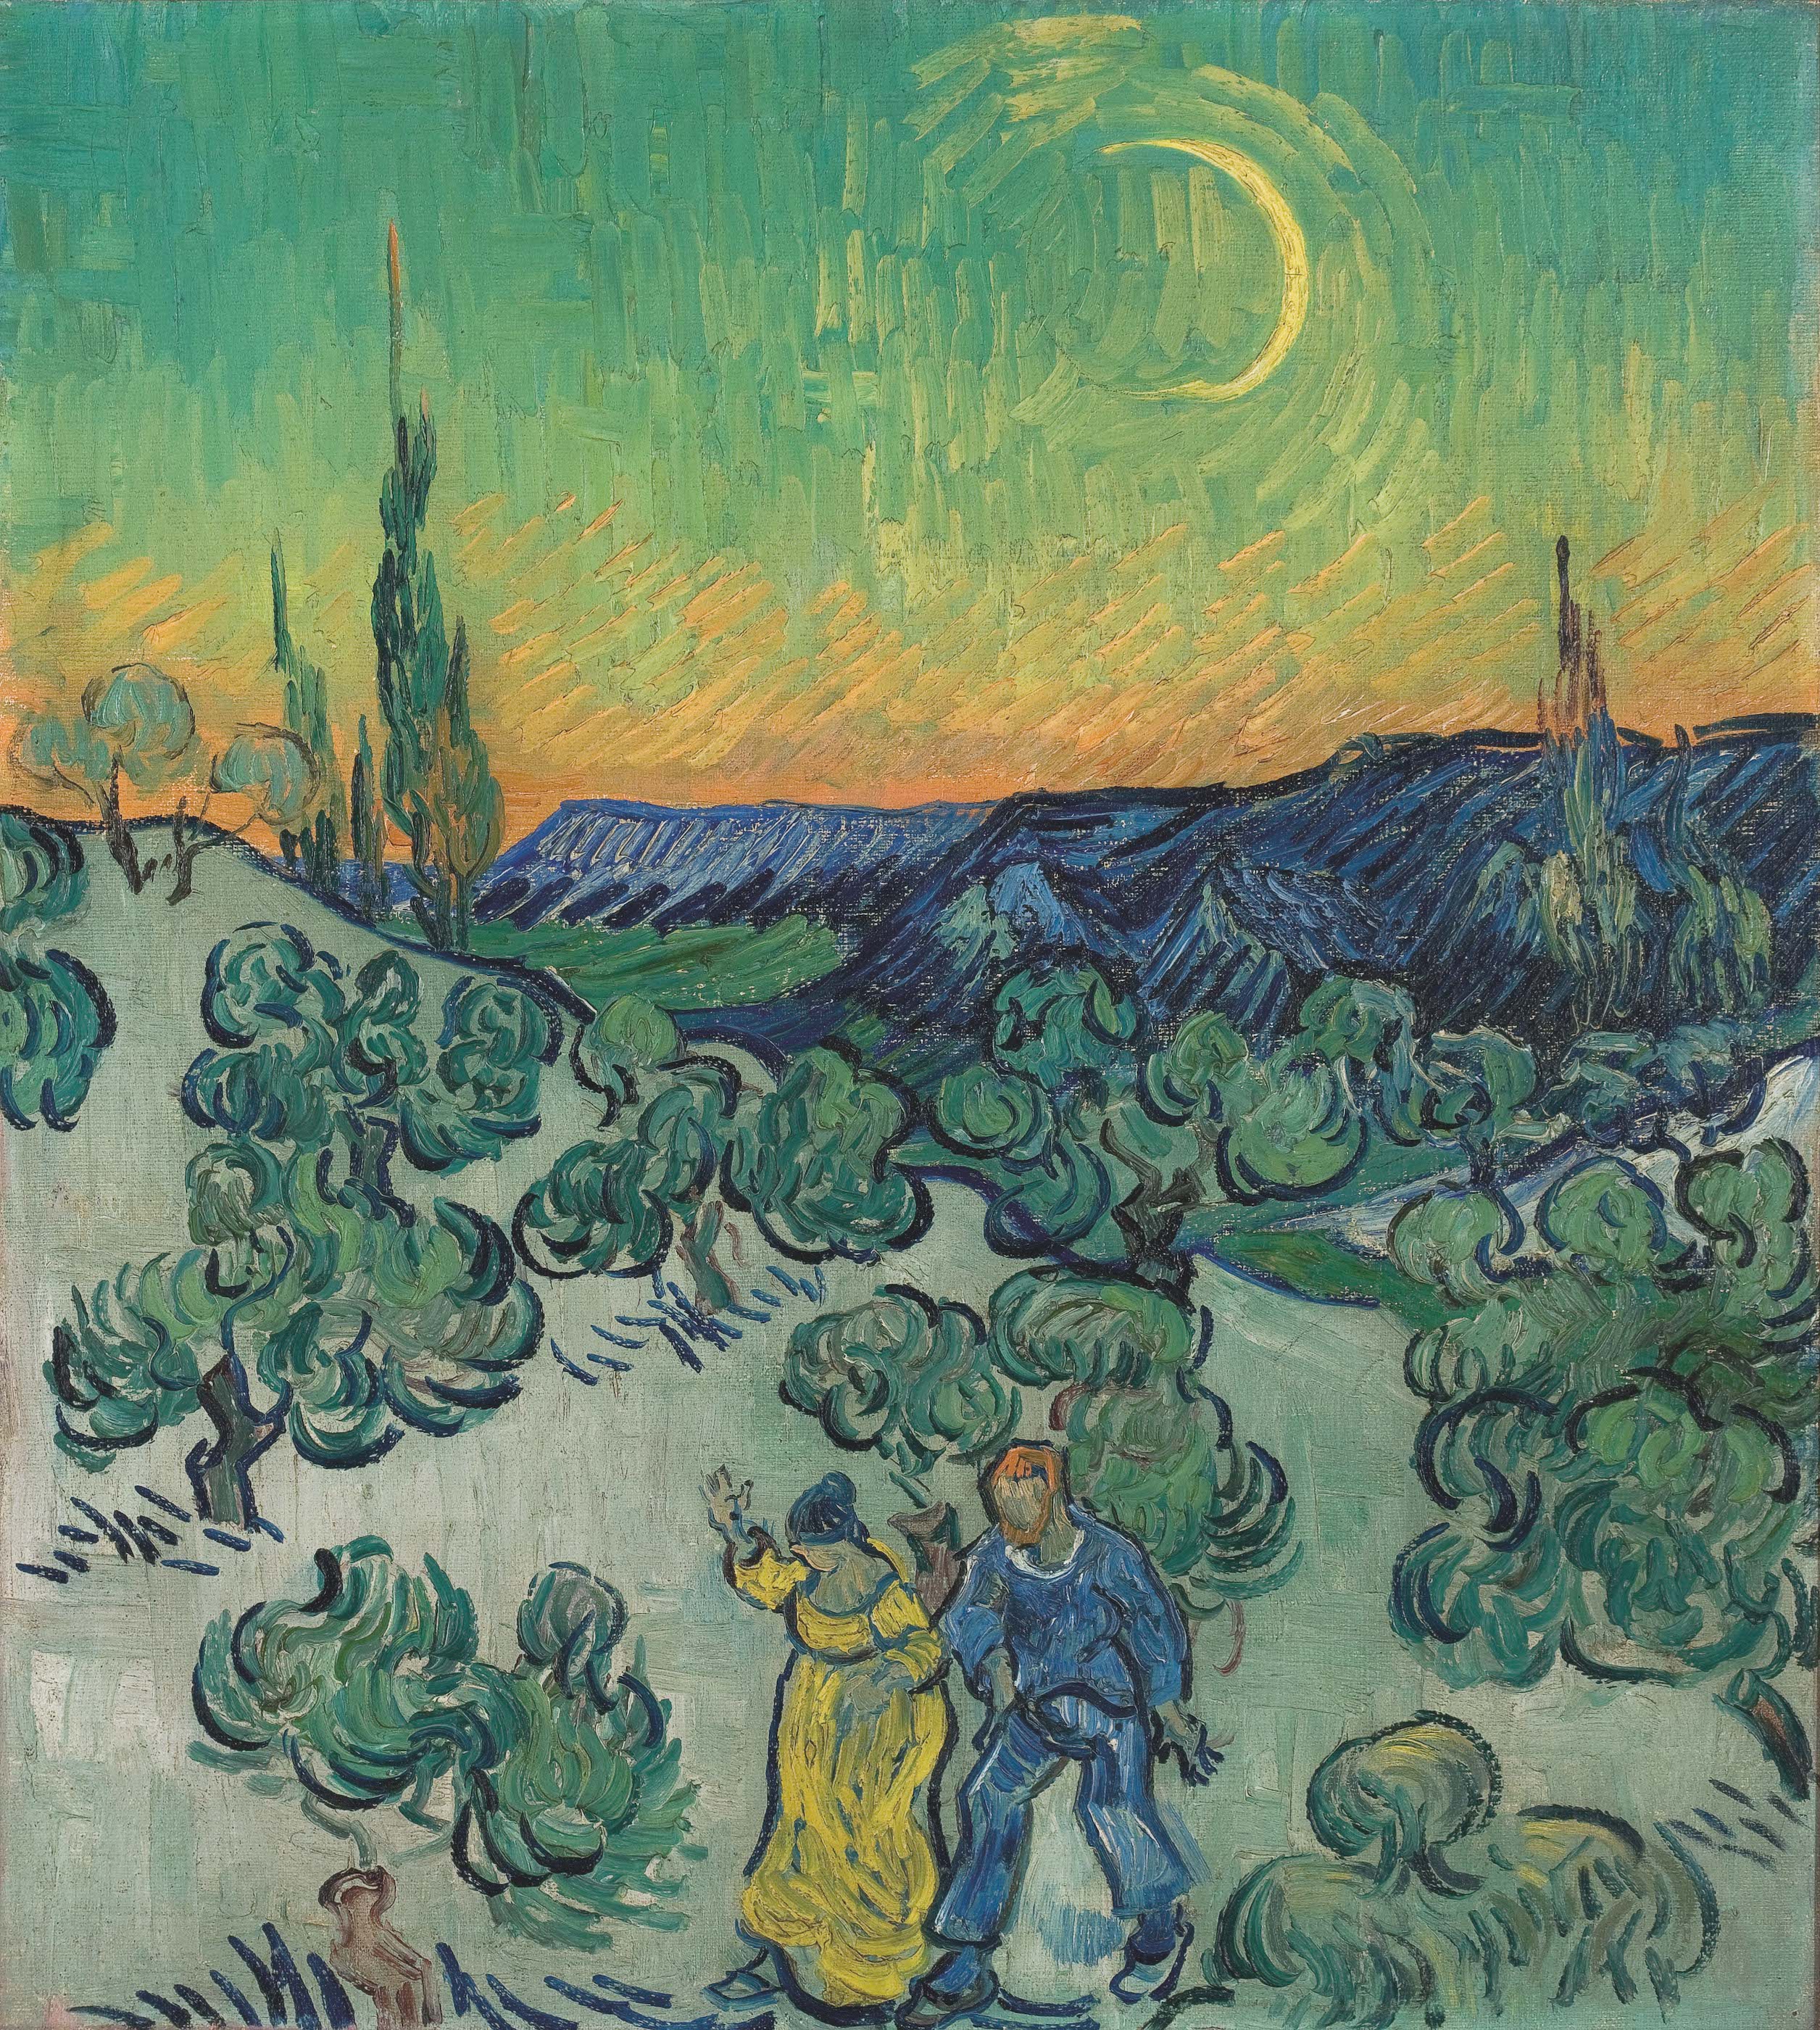 Un paseo al anochecer by Vincent van Gogh - 1889 - 1890 - 52 x 47 cm Museu de Arte de São Paulo